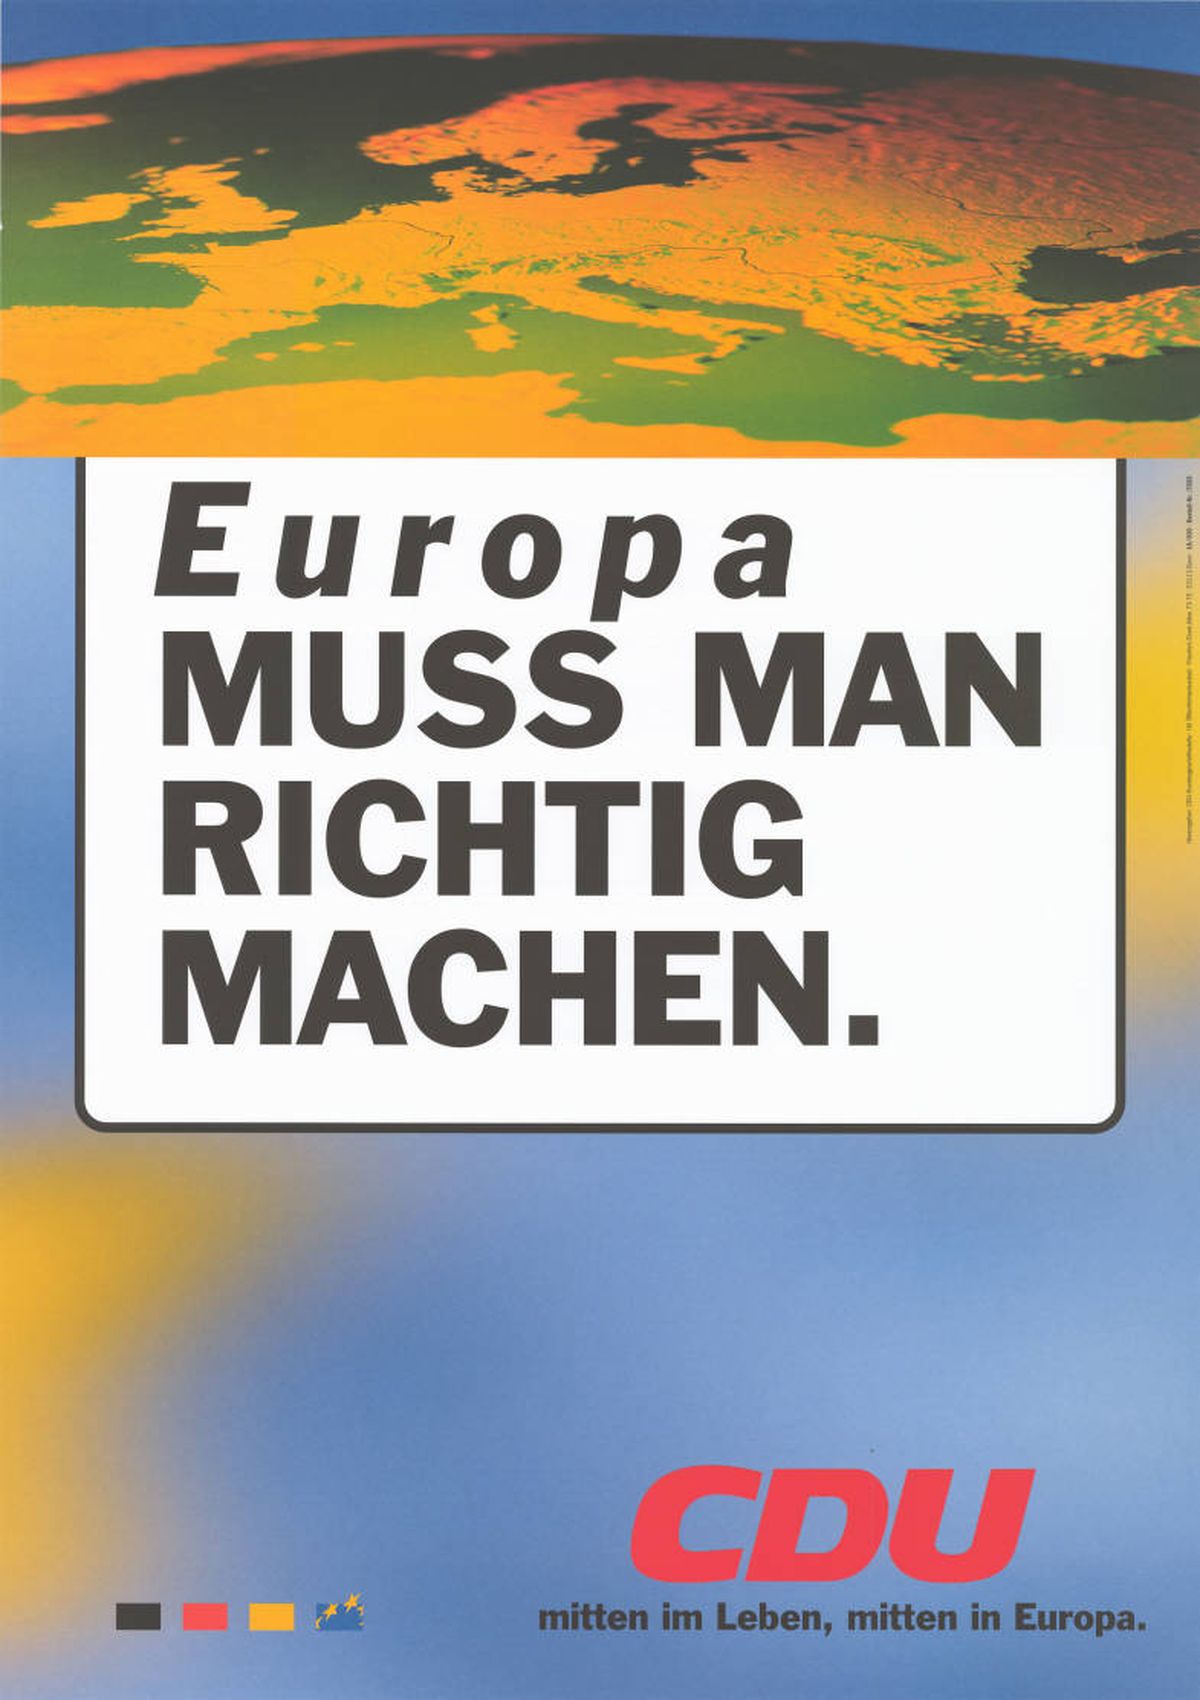 Рекламный плакат Христианско-демократического союза Германии (ХДС) к европейским выборам 1999 года.